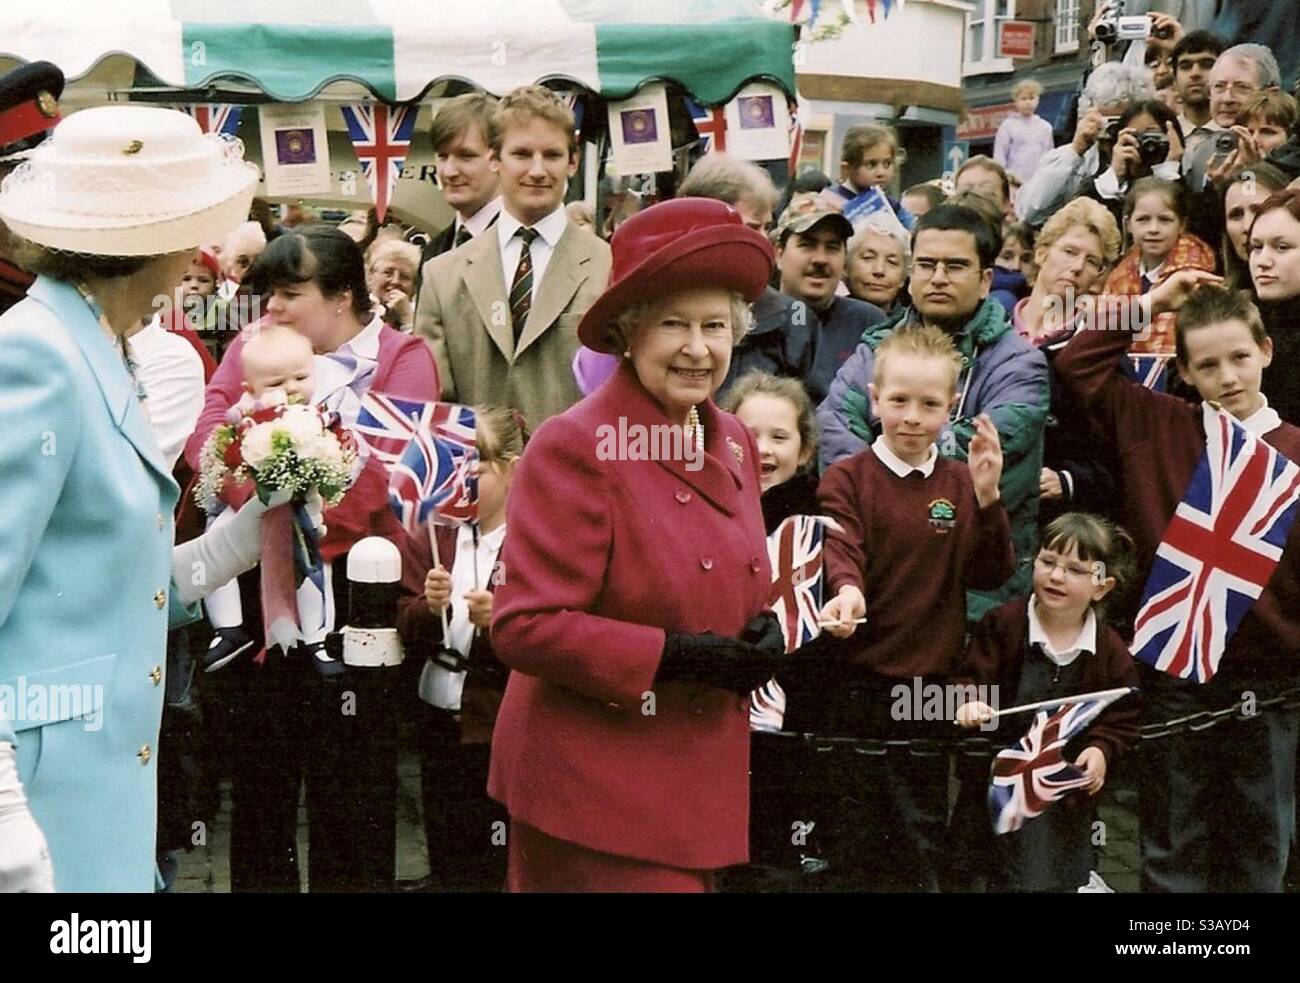 The Queen visits Aylesbury for her Golden Jubilee in 2002 Stock Photo